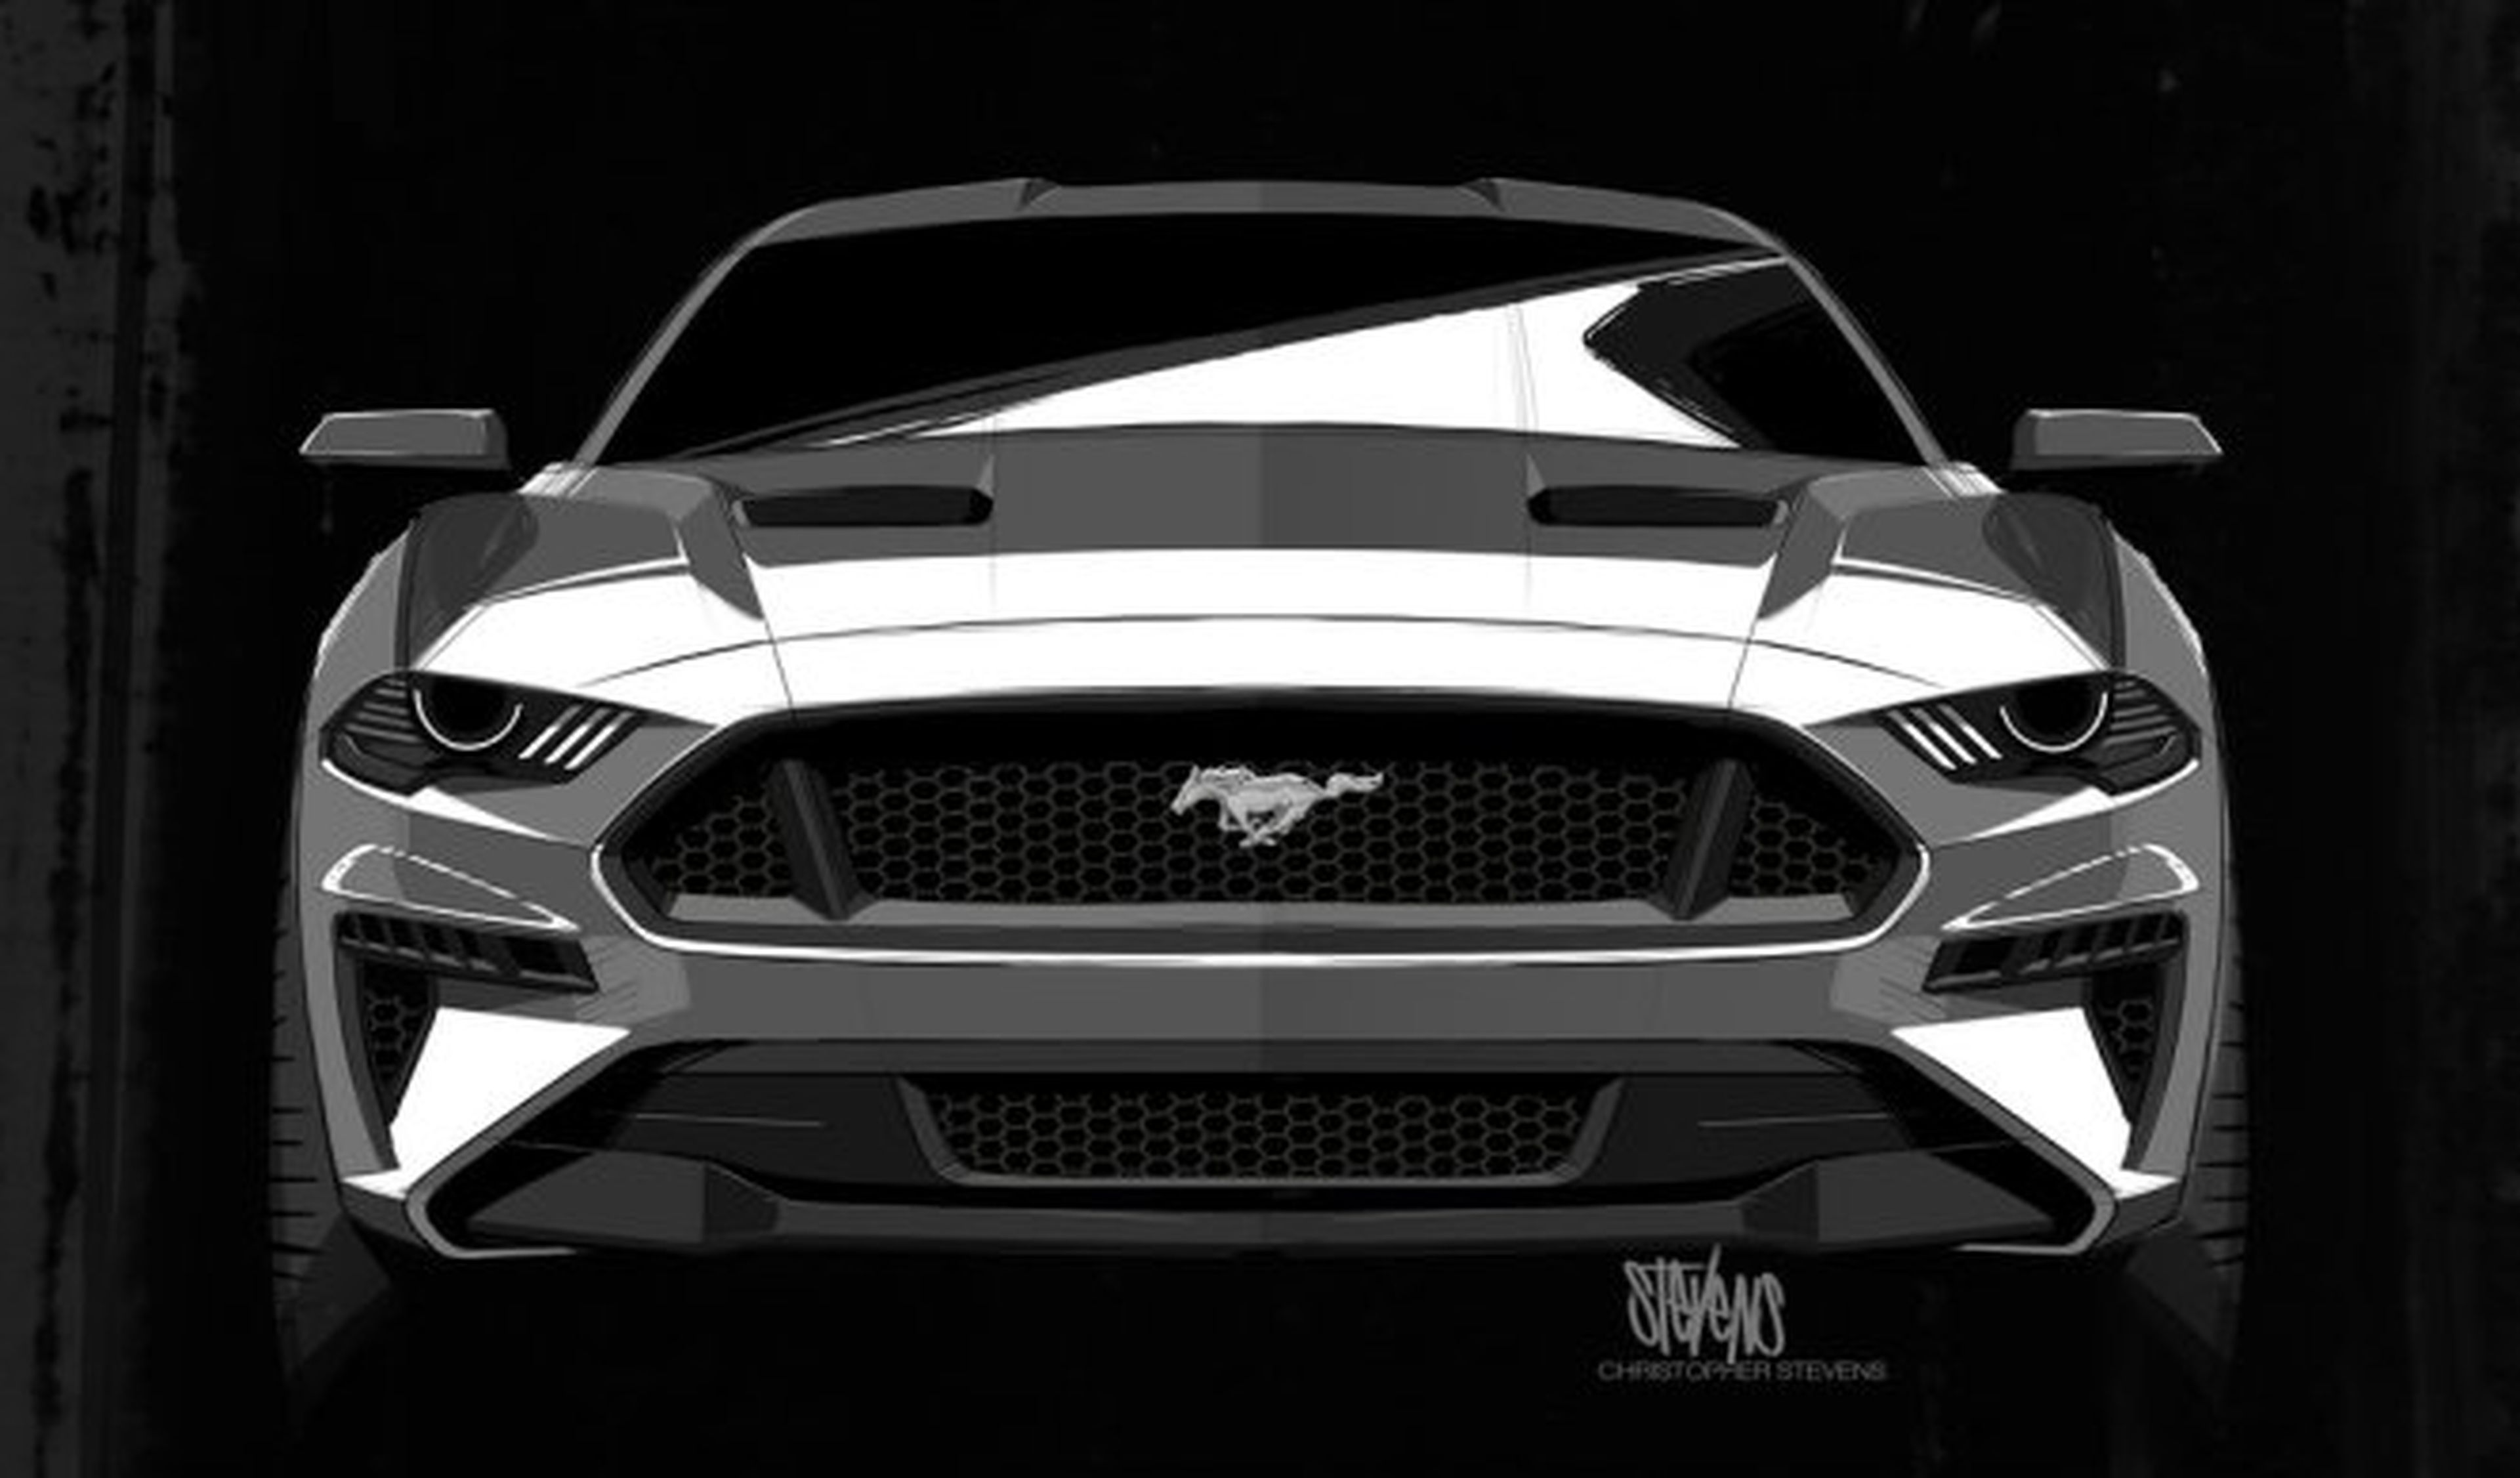 Darth Vader inspiró el diseño del nuevo Ford Mustang